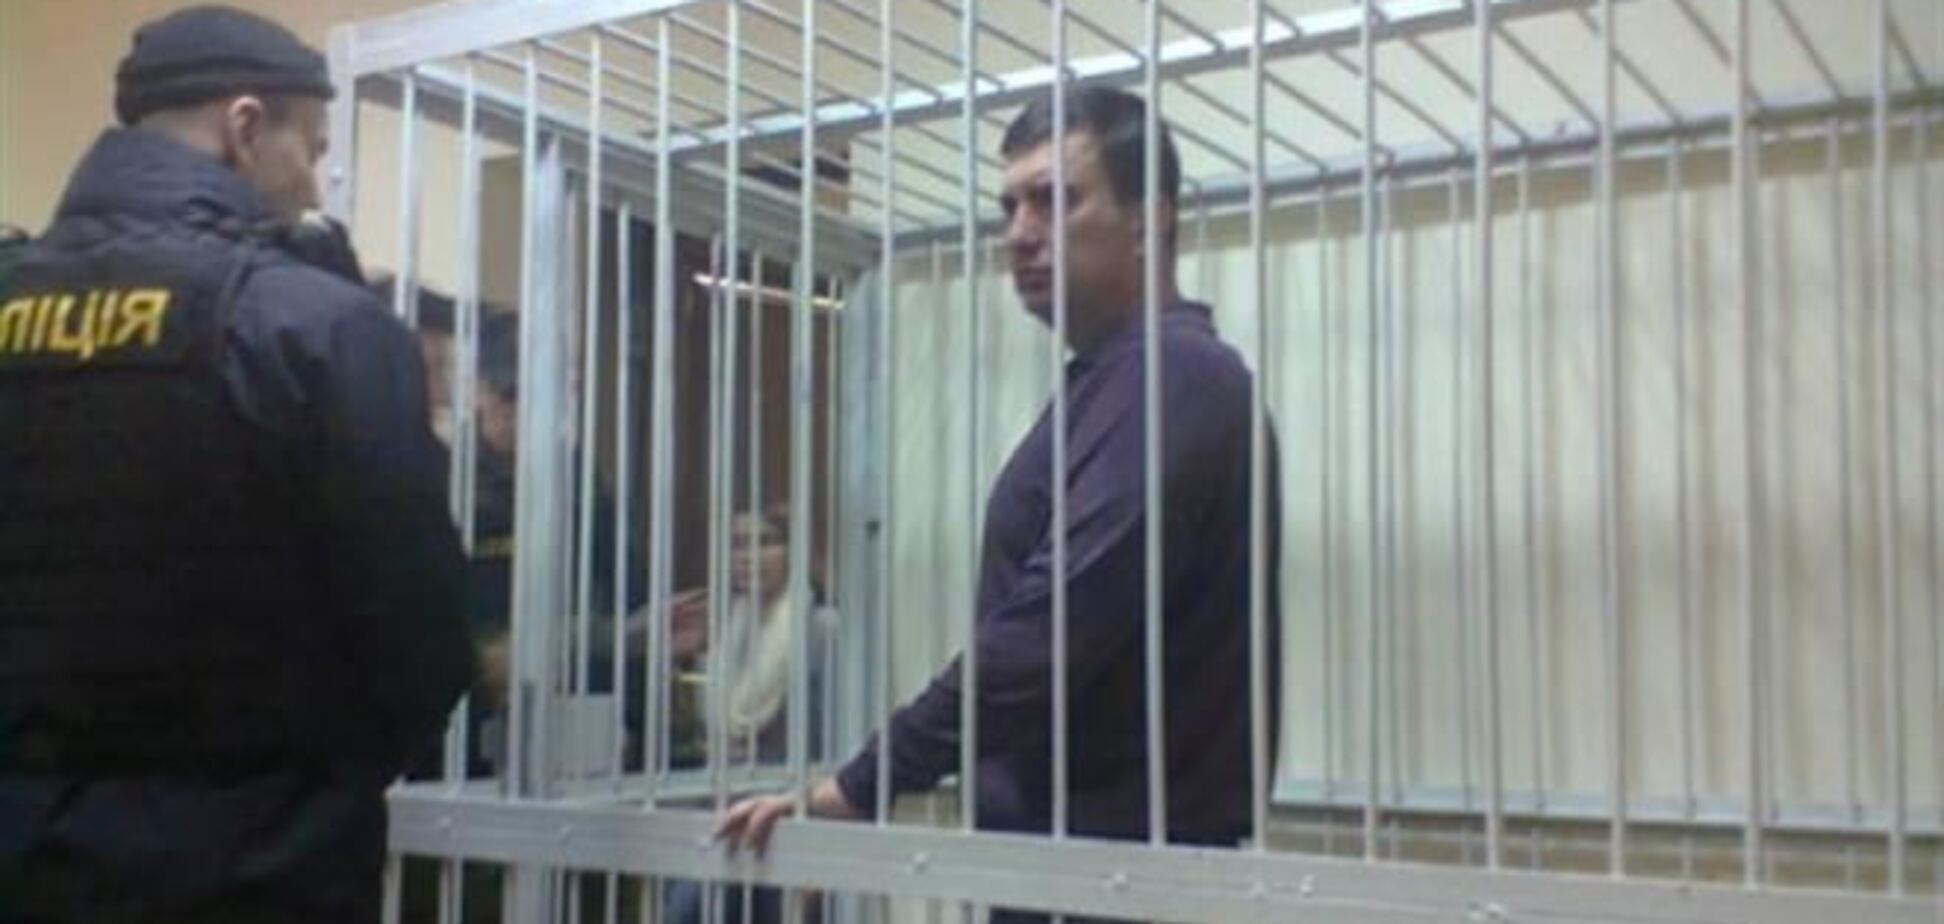 Марков на суде отрицает все обвинения 